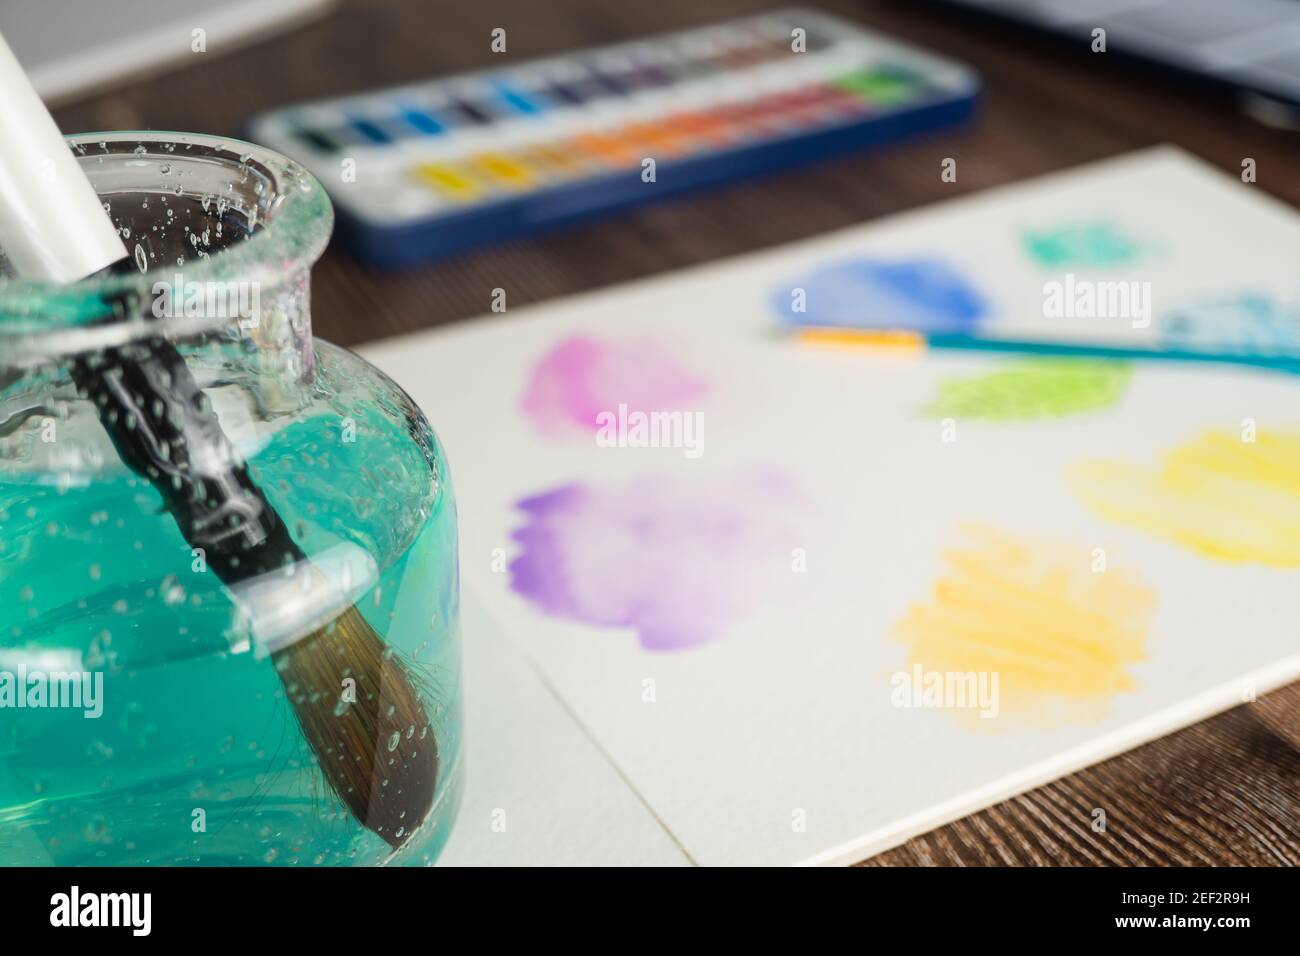 Vernici ad acqua e tamponi di disegno disposti sul piano del tavolo. Colori vivaci e forme astratte di doodle con pennello in acqua verde a fuoco in foregroun Foto Stock